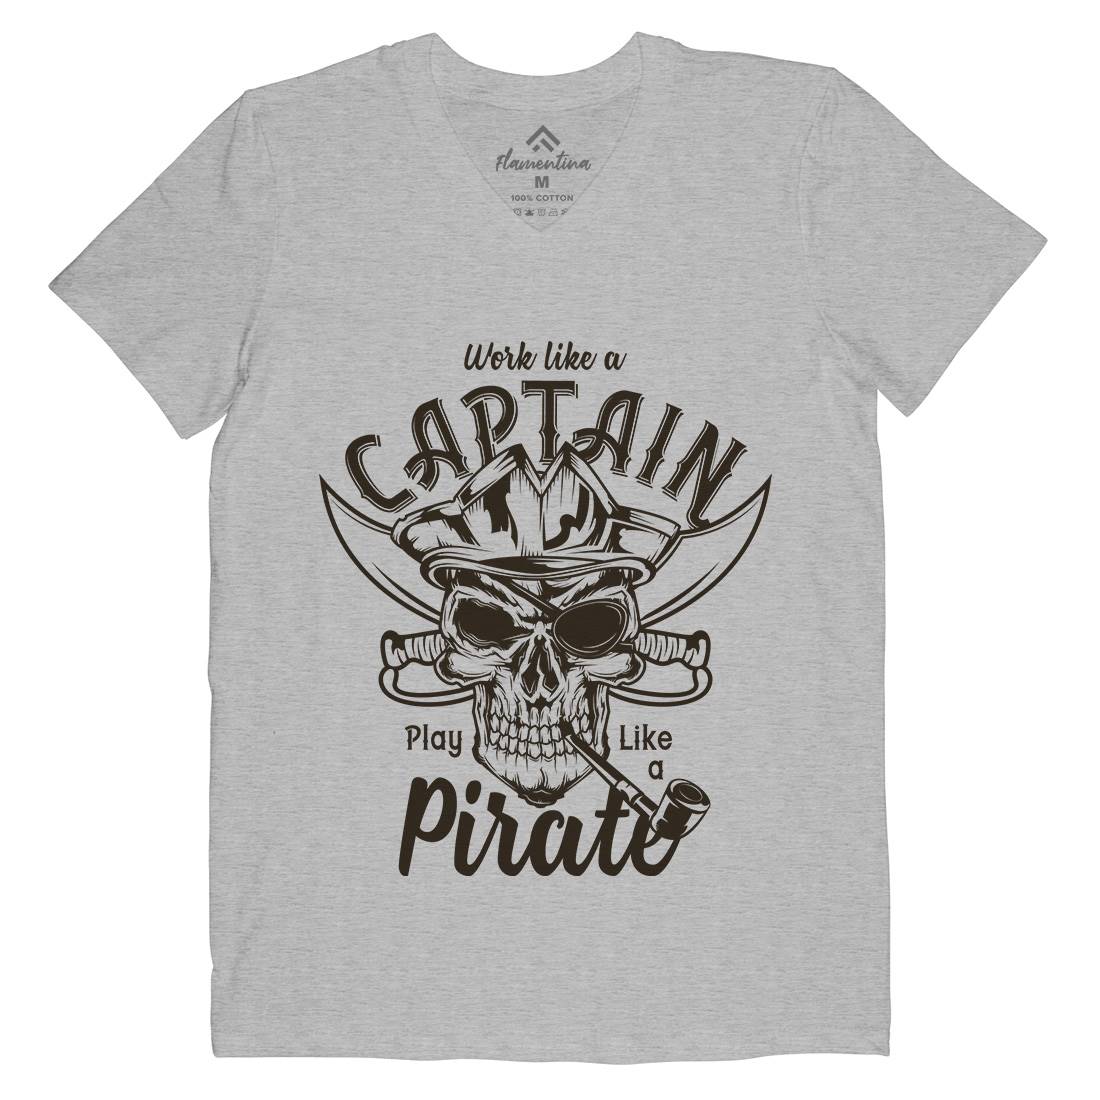 Pirate Mens Organic V-Neck T-Shirt Navy B156